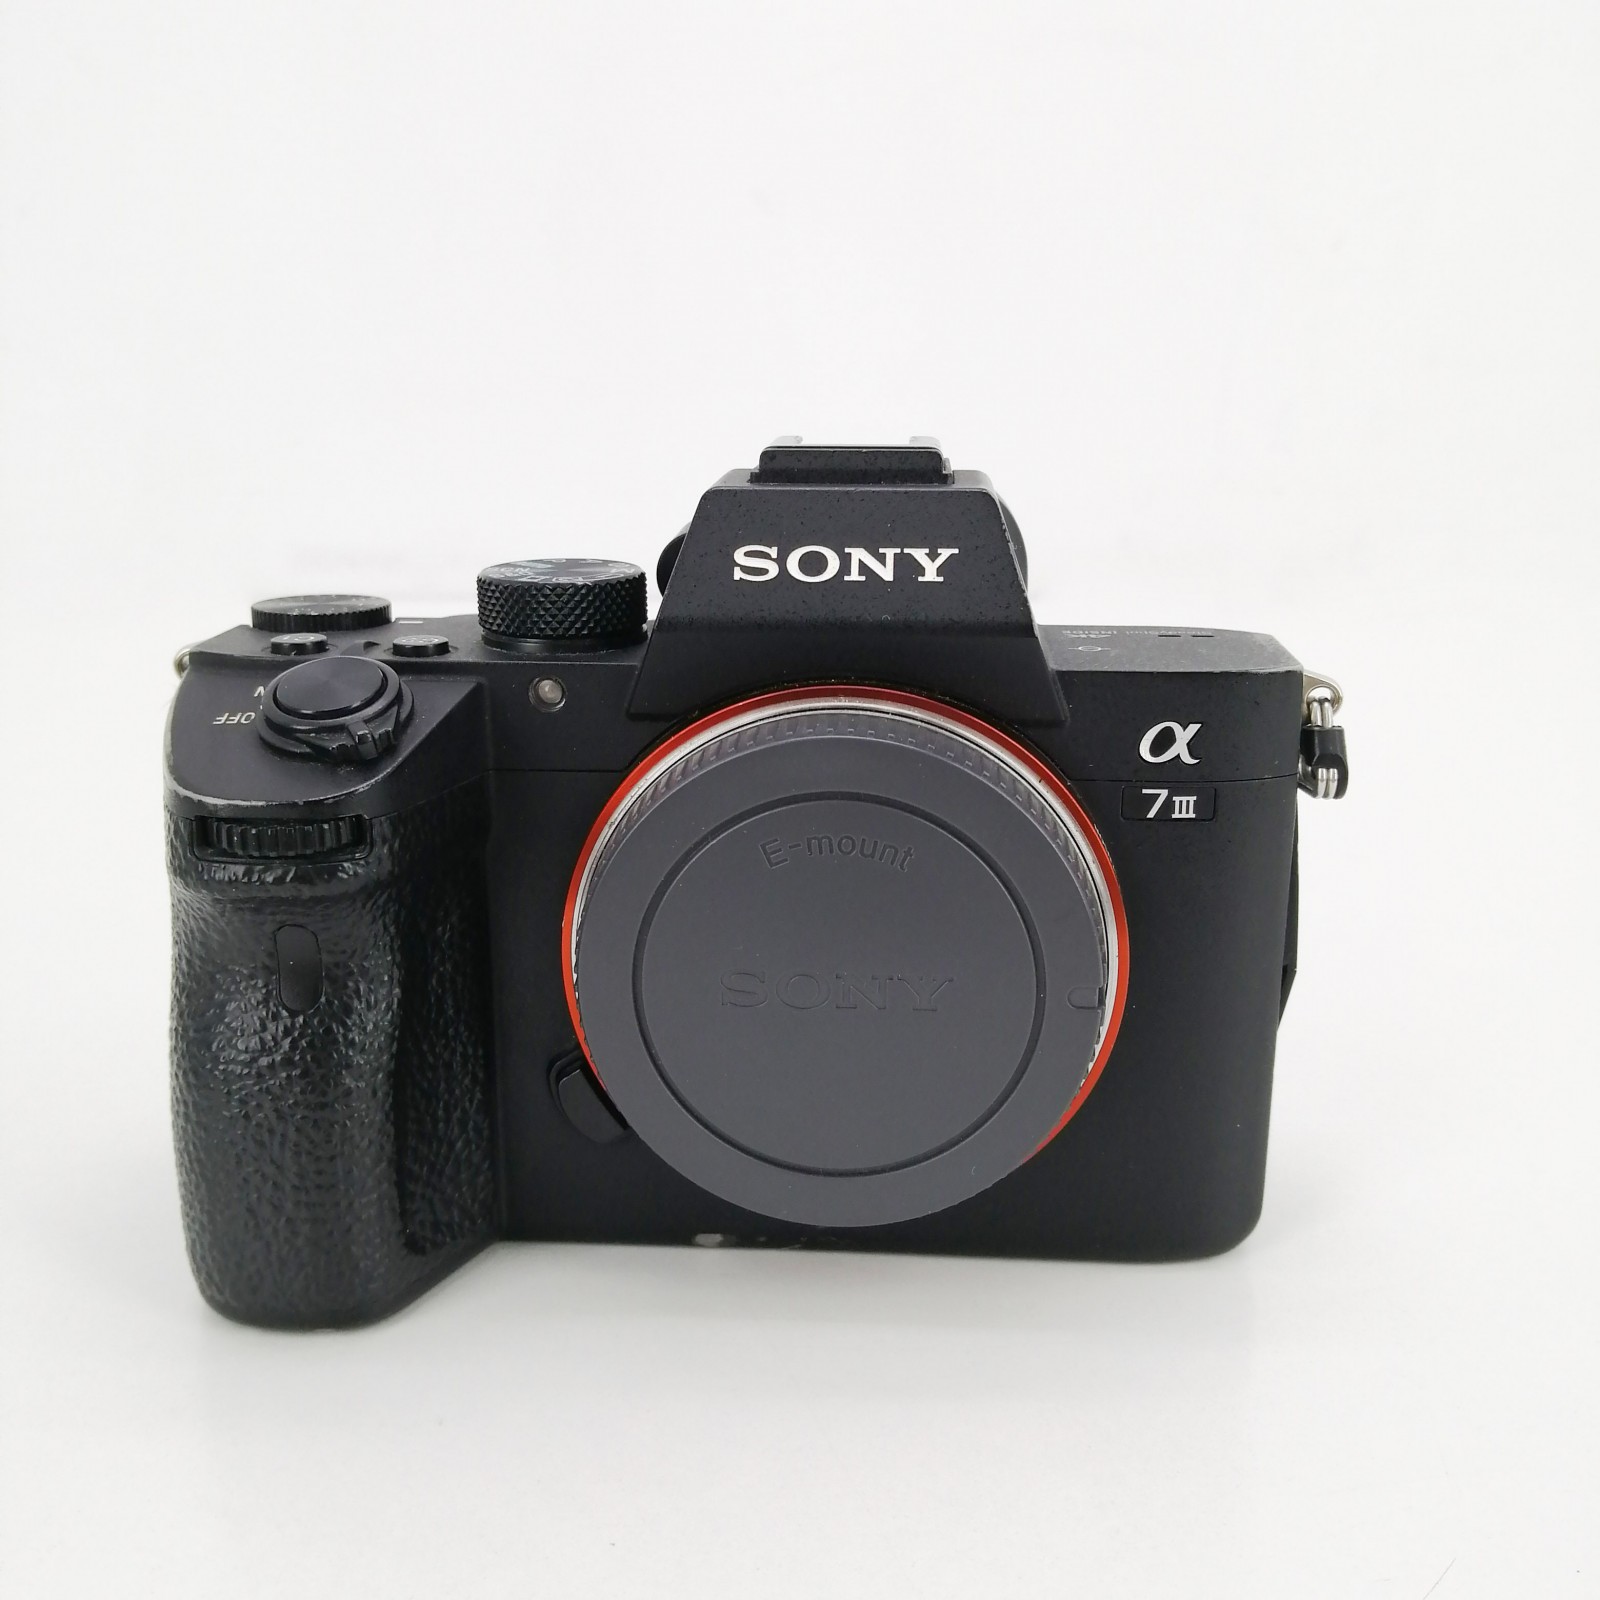 Sony α7 II, una nueva cámara full frame de la gama α7